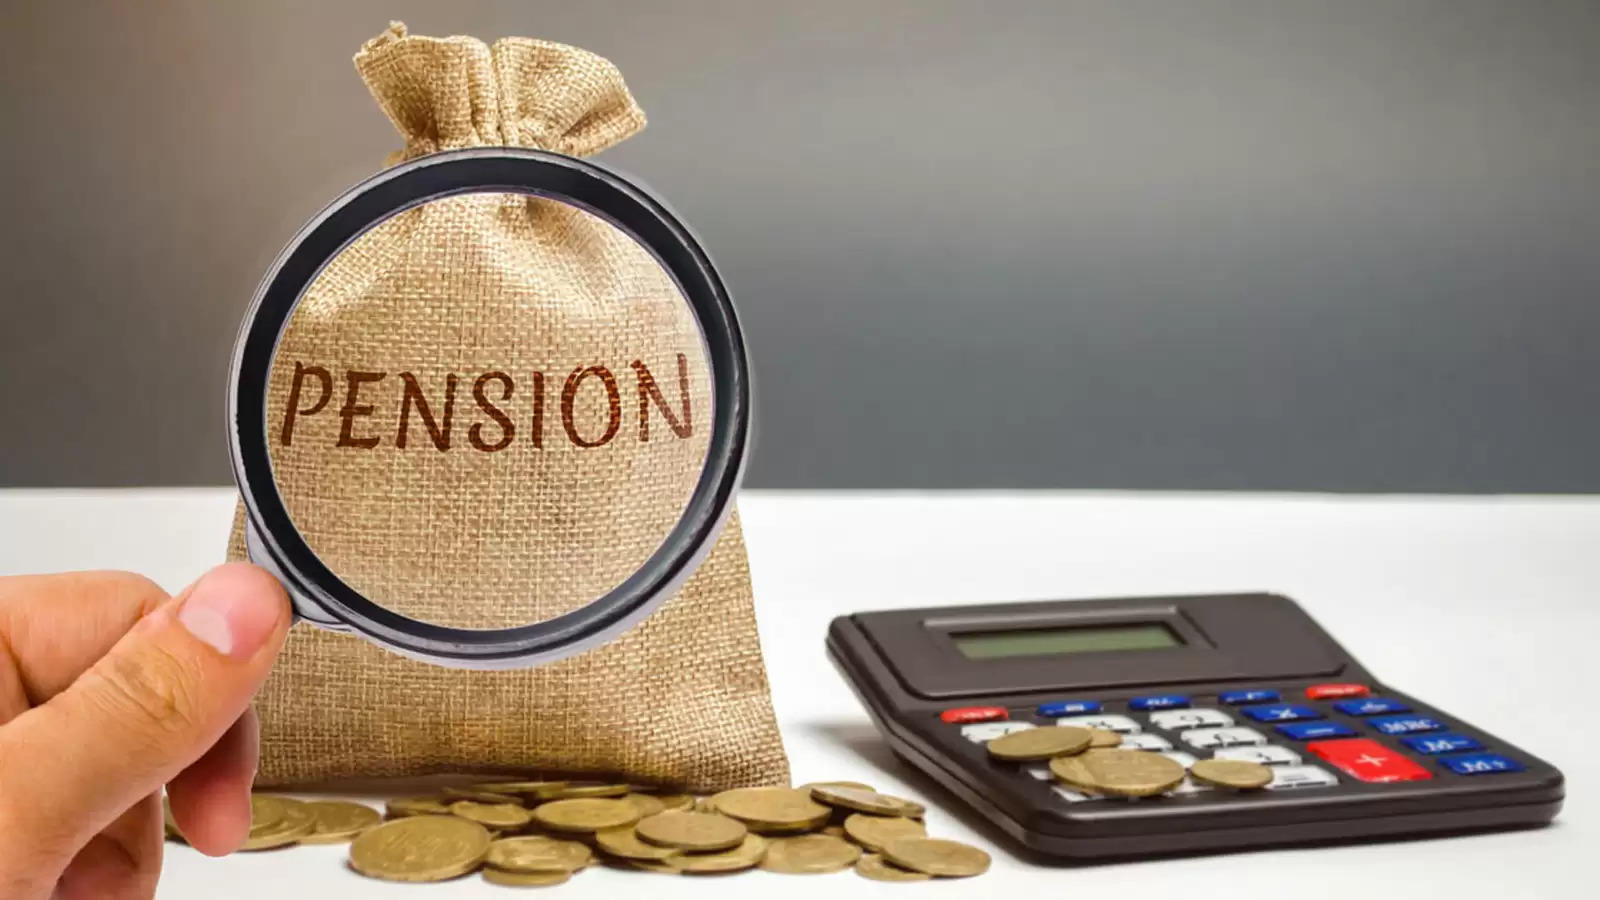 Free Pension Scheme: इस सरकारी योजना से जुड़कर आप भी पा सकते है मुफ्त पेंशन का लाभ, जानिये कैसे करें आवेदन  